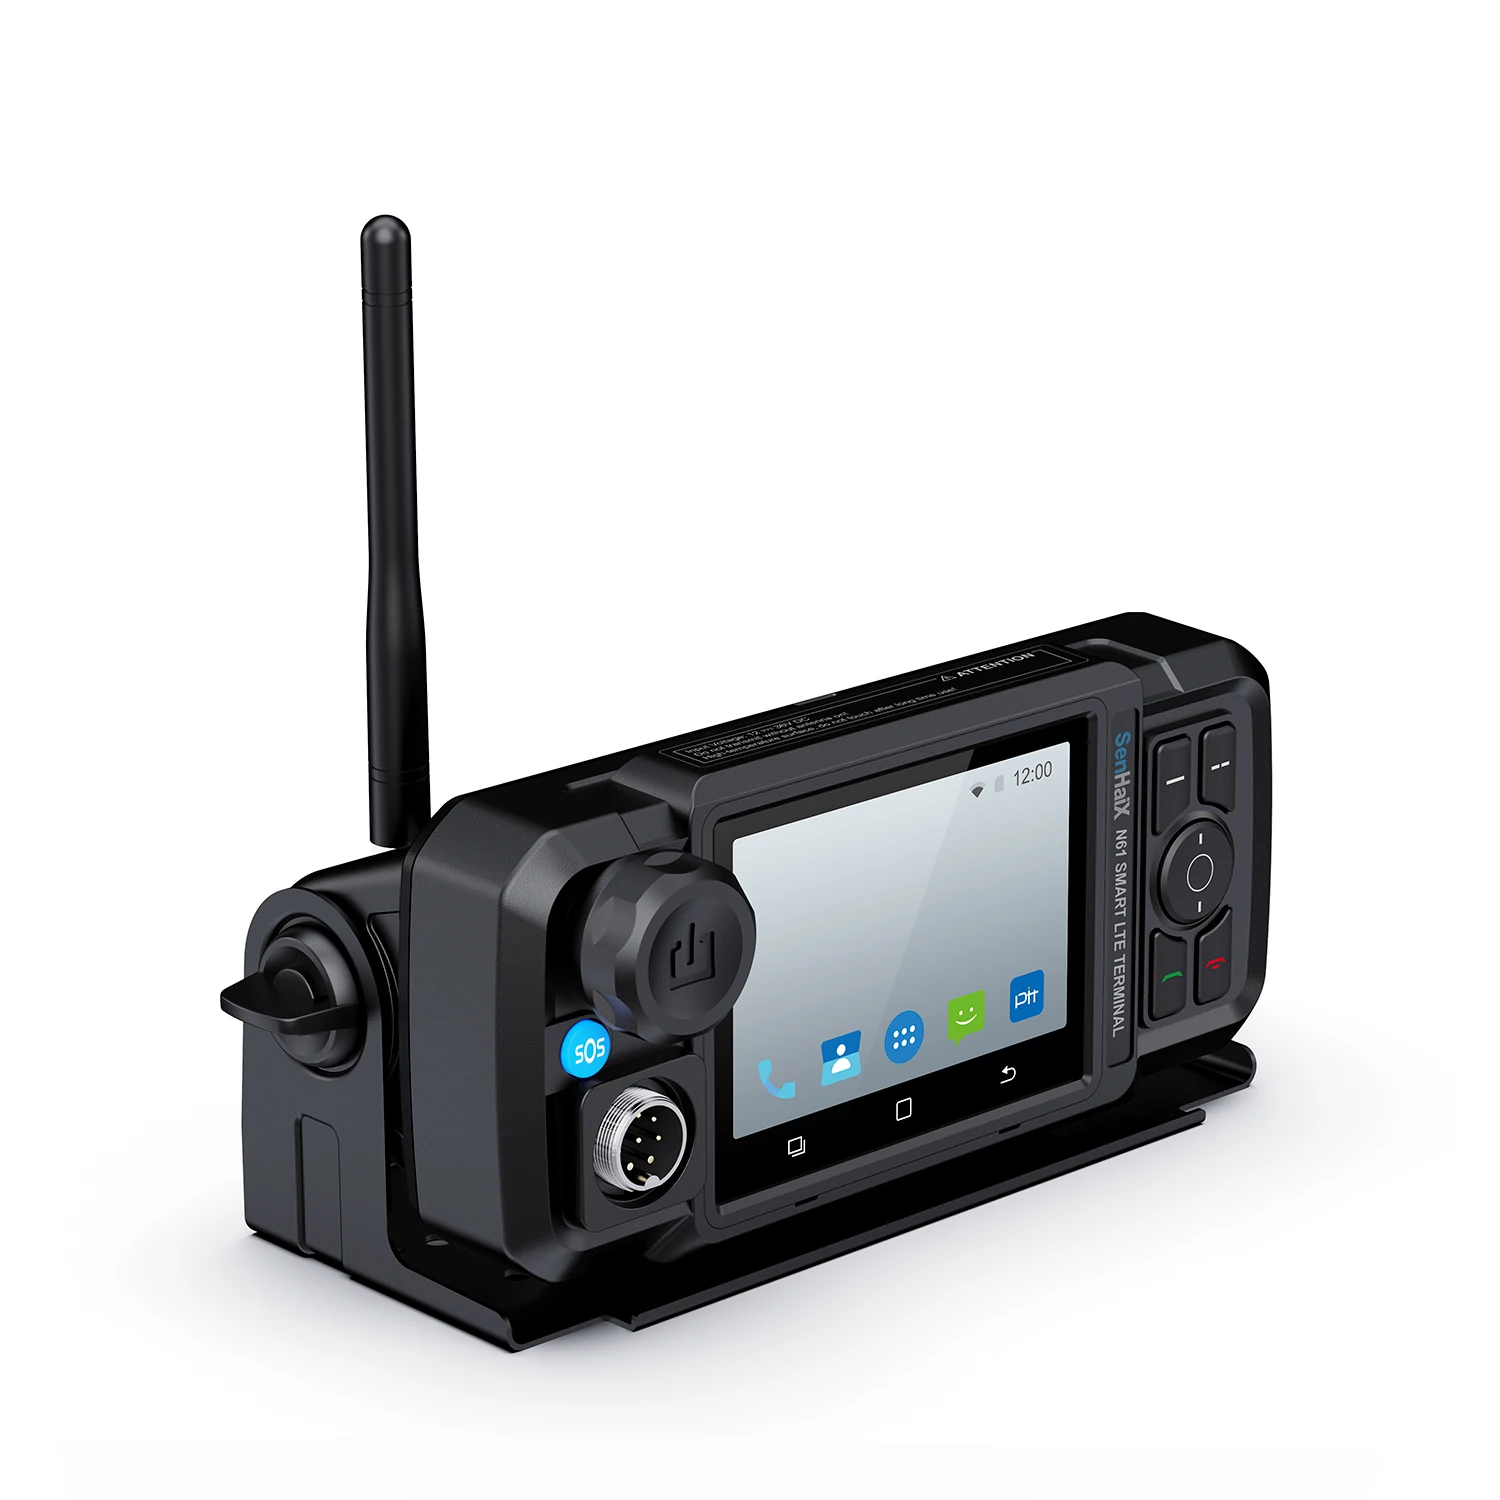 Camoro-4g zelloネットワークカーラジオ,android,ワイヤレス,bluetooth,タッチスクリーン,ptt,wifi,gps,sos  AliExpress